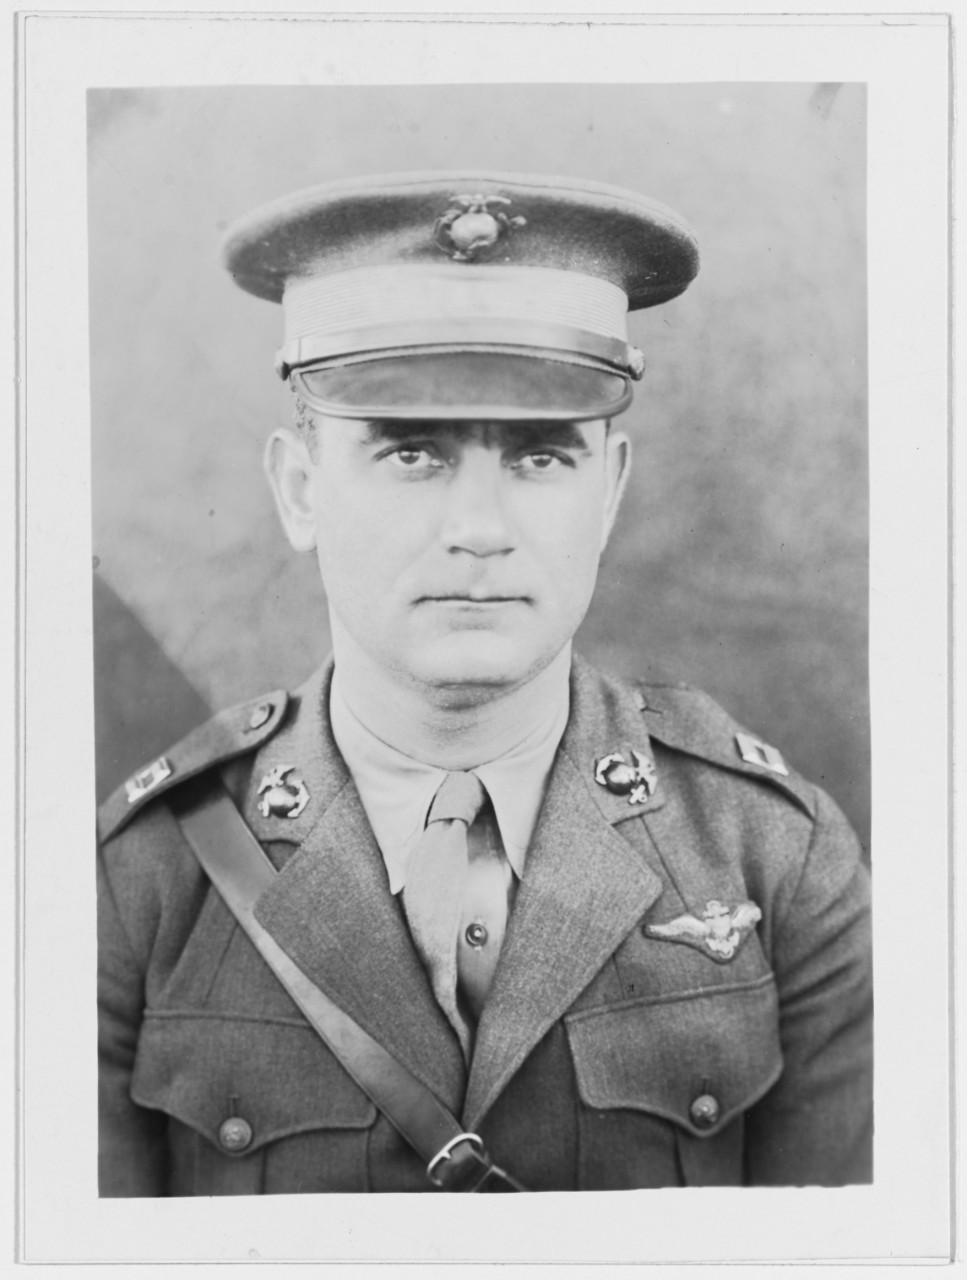 Captain James T. Moore, USMC